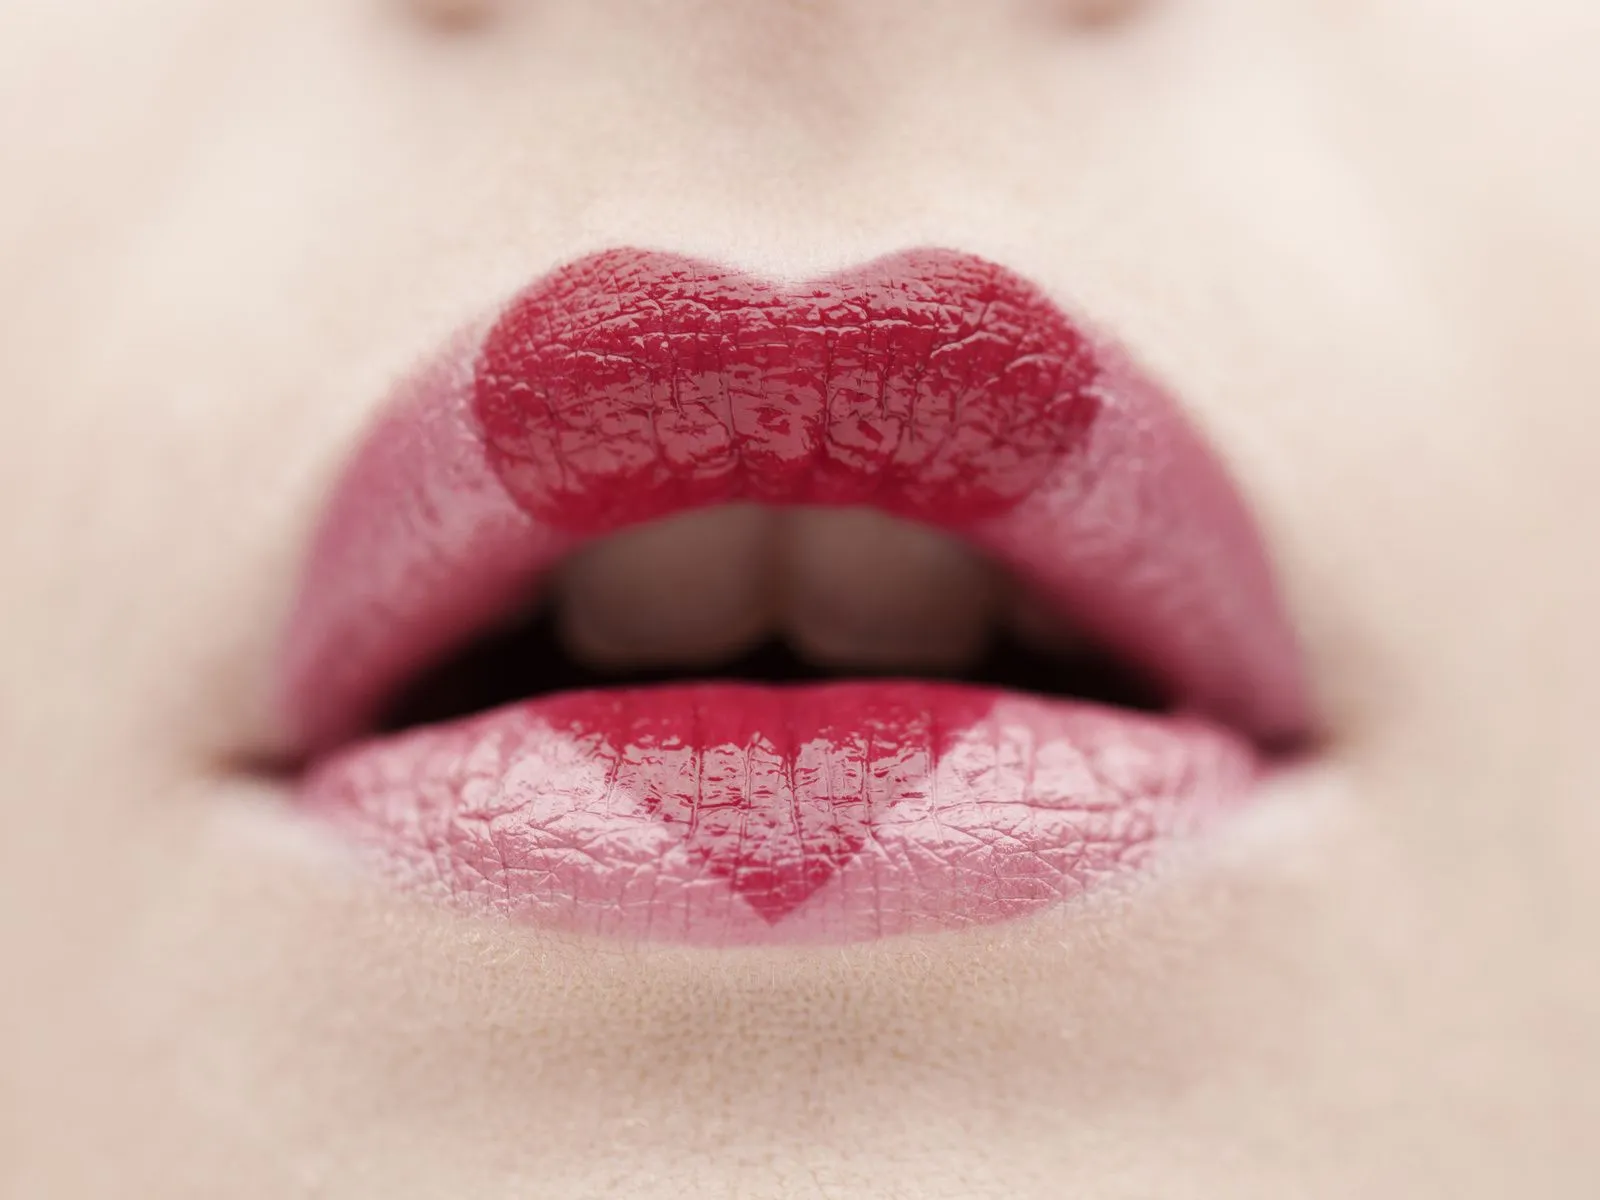 Fotos de labios de corazon Mejores fotos del mundo para facebook